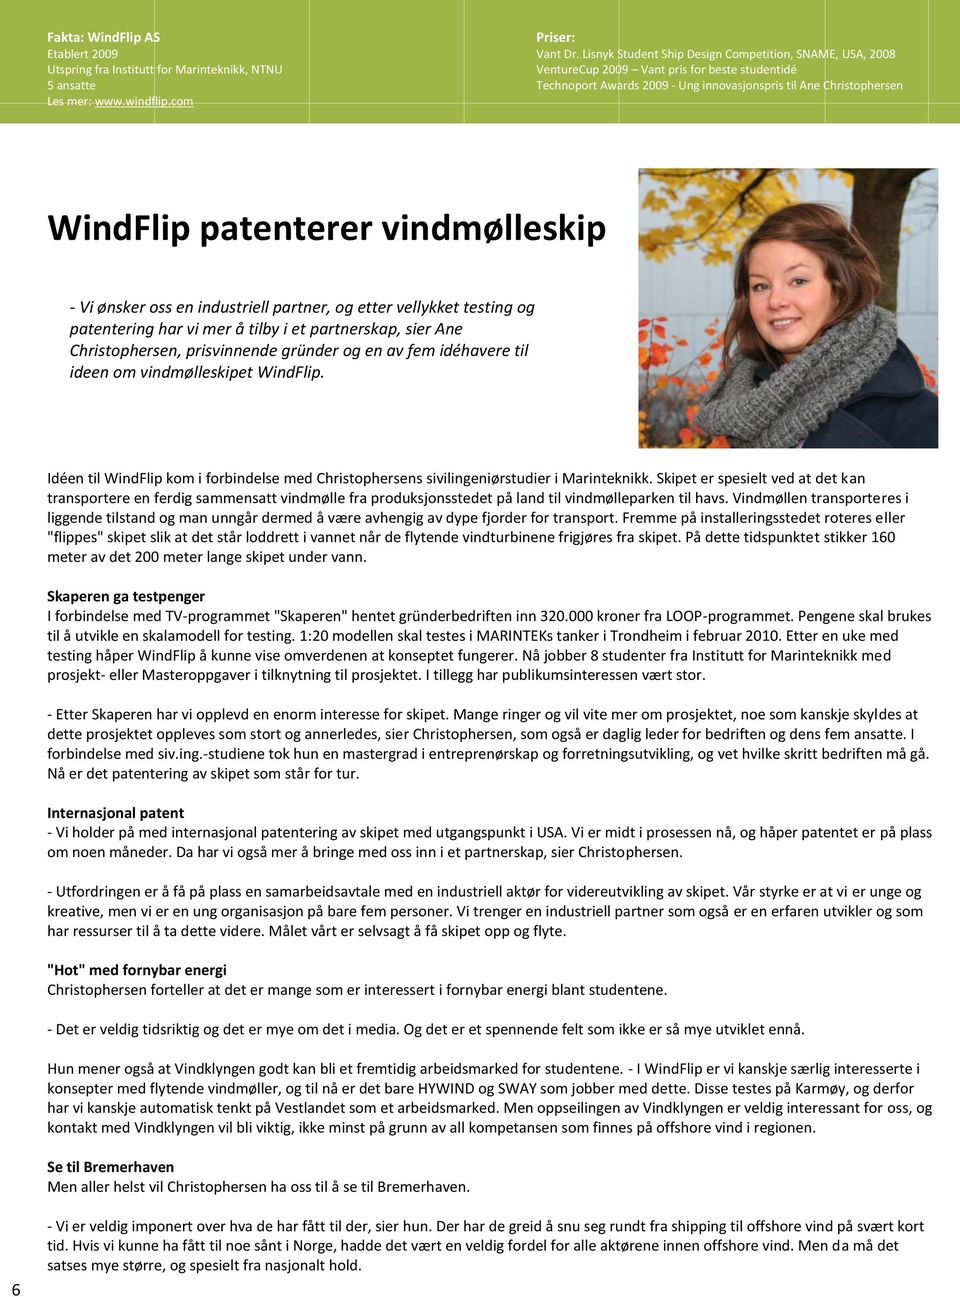 vindmølleskip - Vi ønsker oss en industriell partner, og etter vellykket testing og patentering har vi mer å tilby i et partnerskap, sier Ane Christophersen, prisvinnende gründer og en av fem